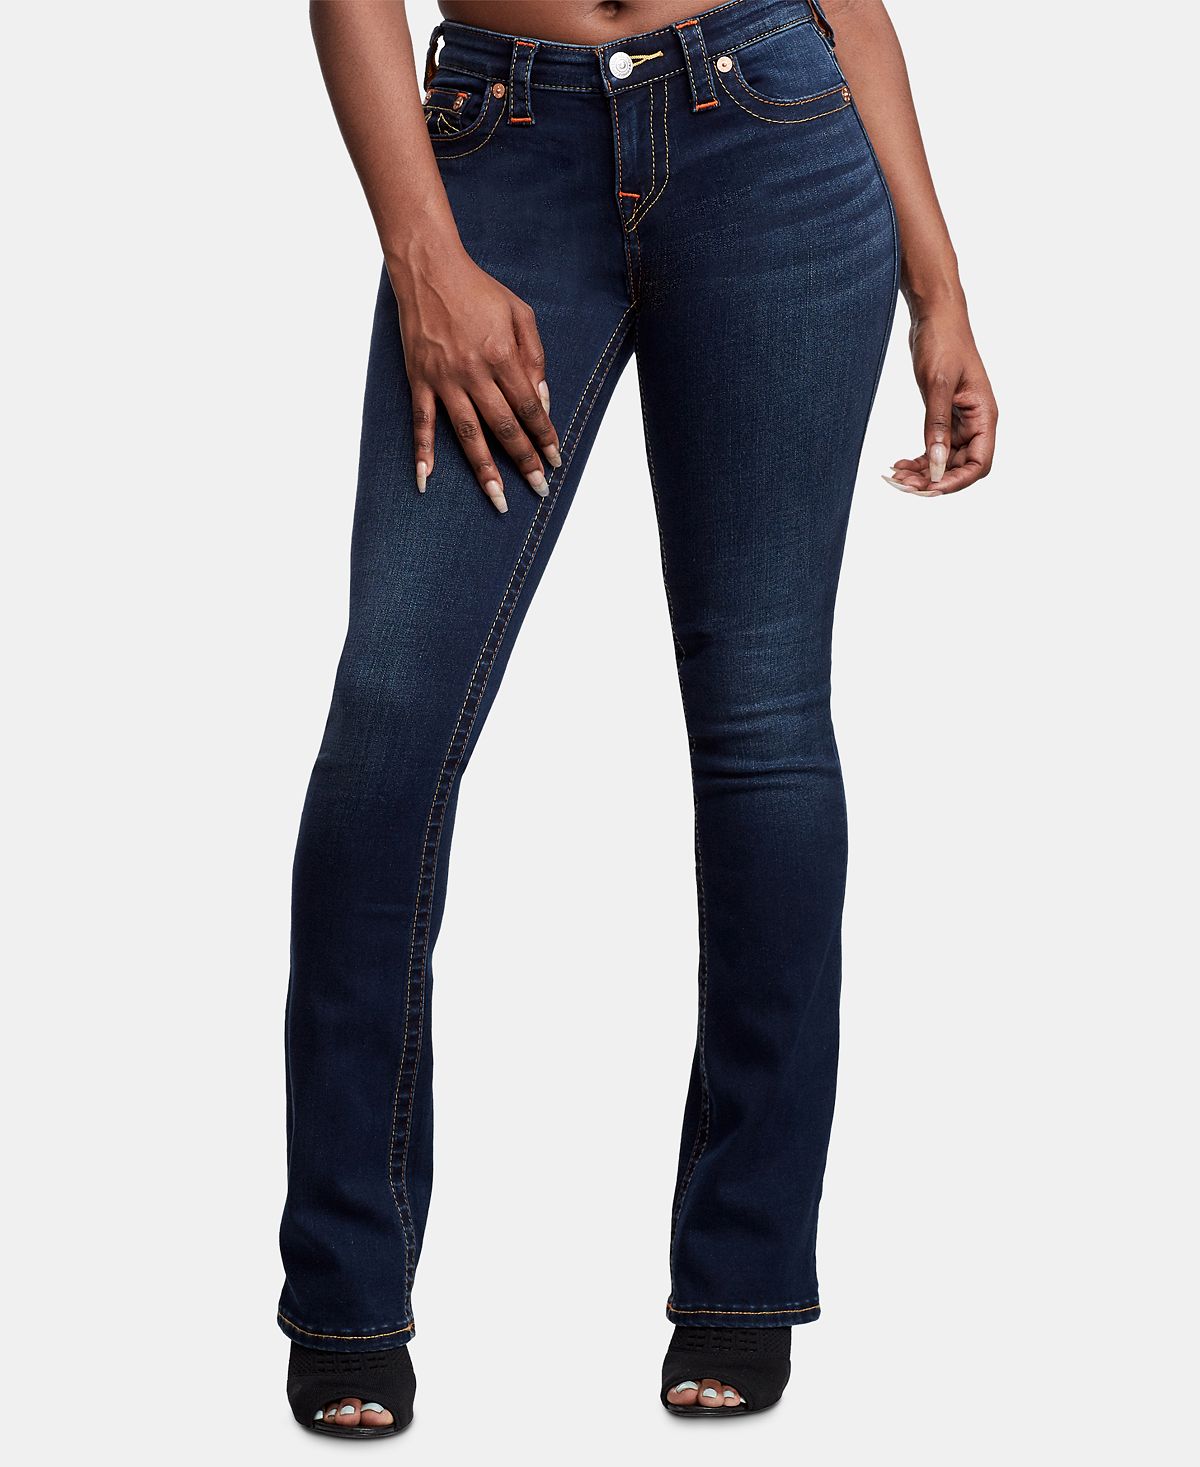 Эластичные прямые джинсы Billie со средней посадкой True Religion soft minimal